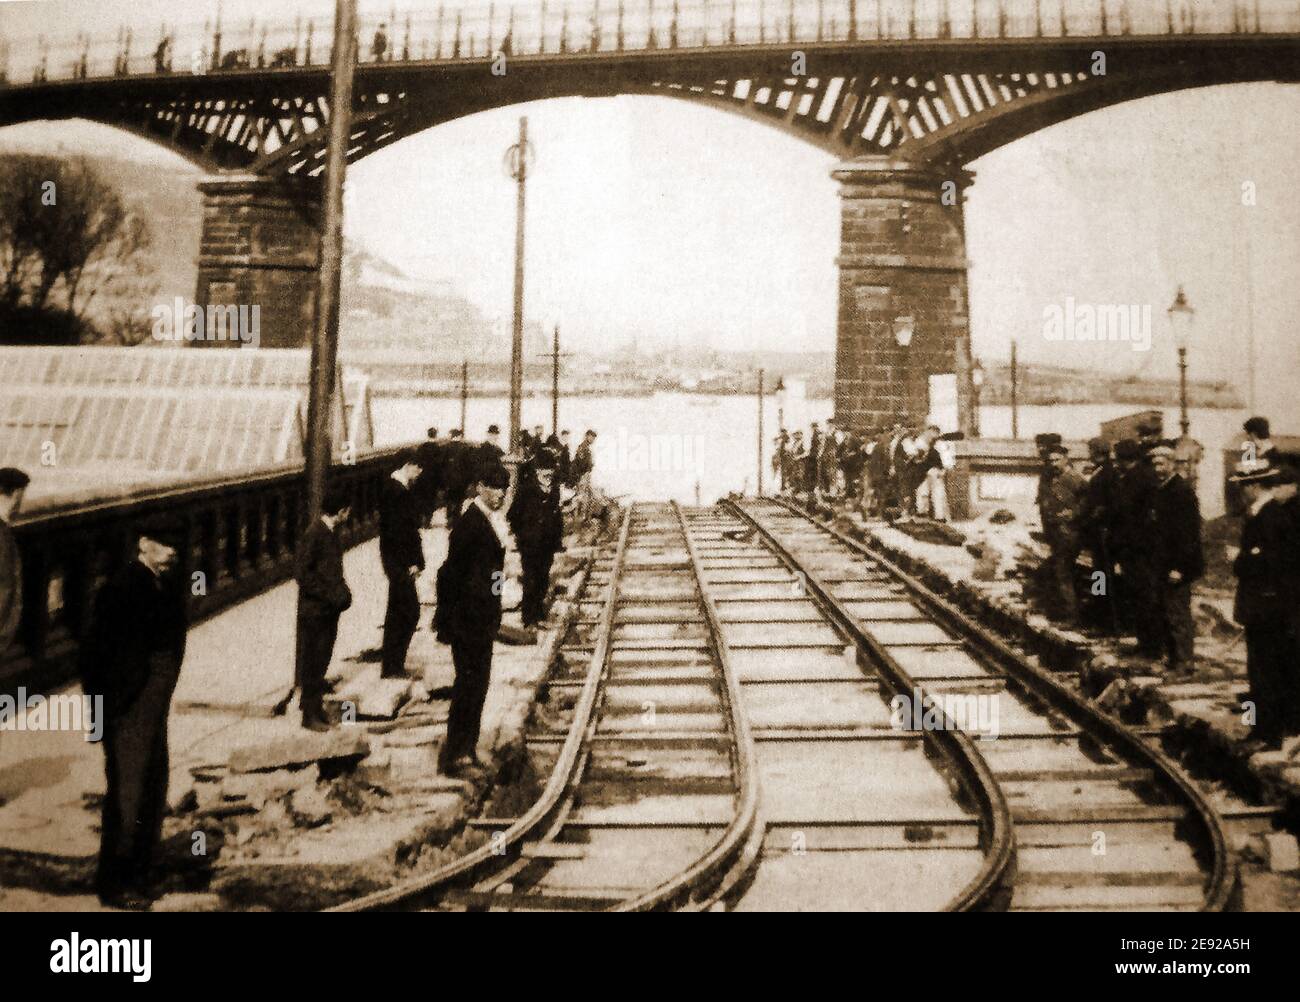 Ein altes Foto aus Scarborough, North Yorkshire, Großbritannien, zeigt die neu angelegten Straßenbahnschienen unter der Valley Bridge mit Arbeitern, Aufsehern und Beobachtern, die sich für ein Foto des fertiggestellten Abschnitts versammeln. Scarborough Bay und Hafen sind im Hintergrund zu sehen. Baubeginn war am 12th. Oktober 1903 (Eröffnung am 6th. Mai 1904) Stockfoto